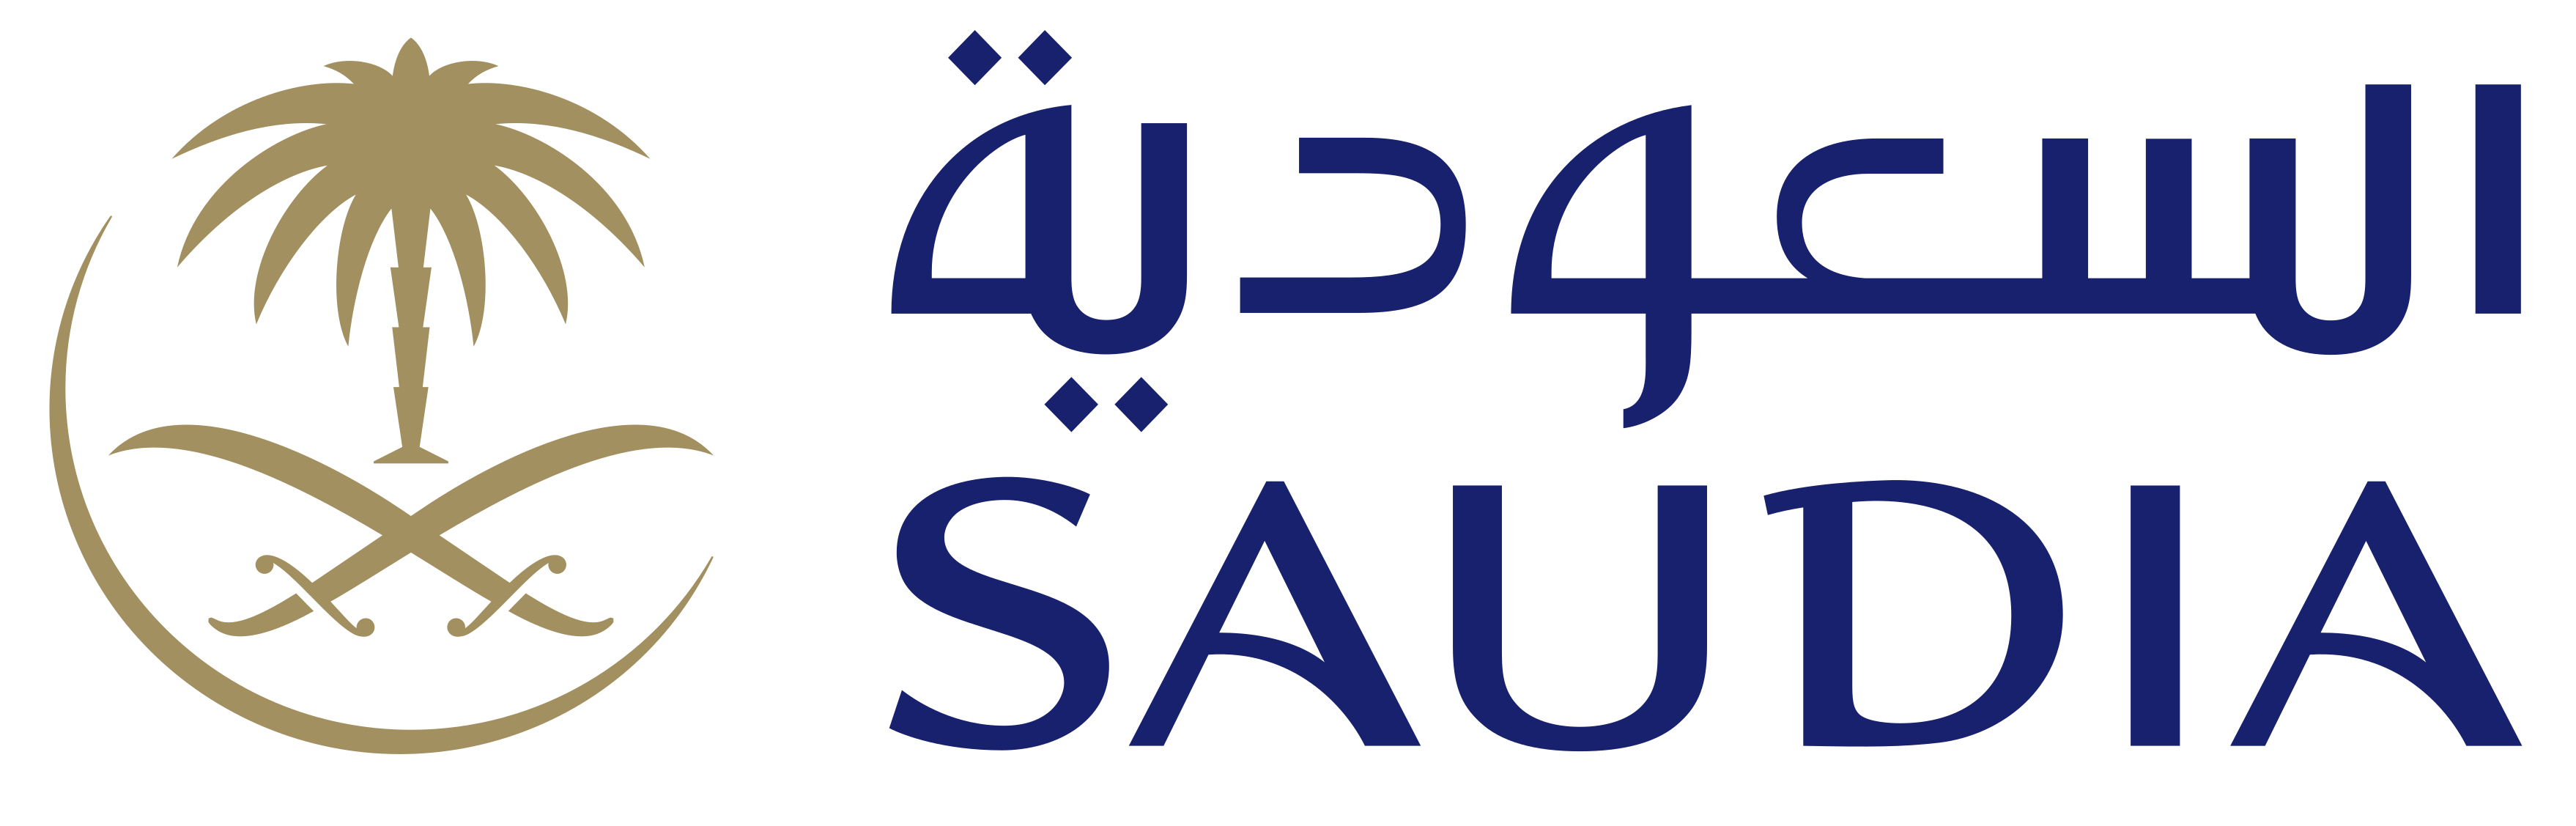 saudia-logo-0